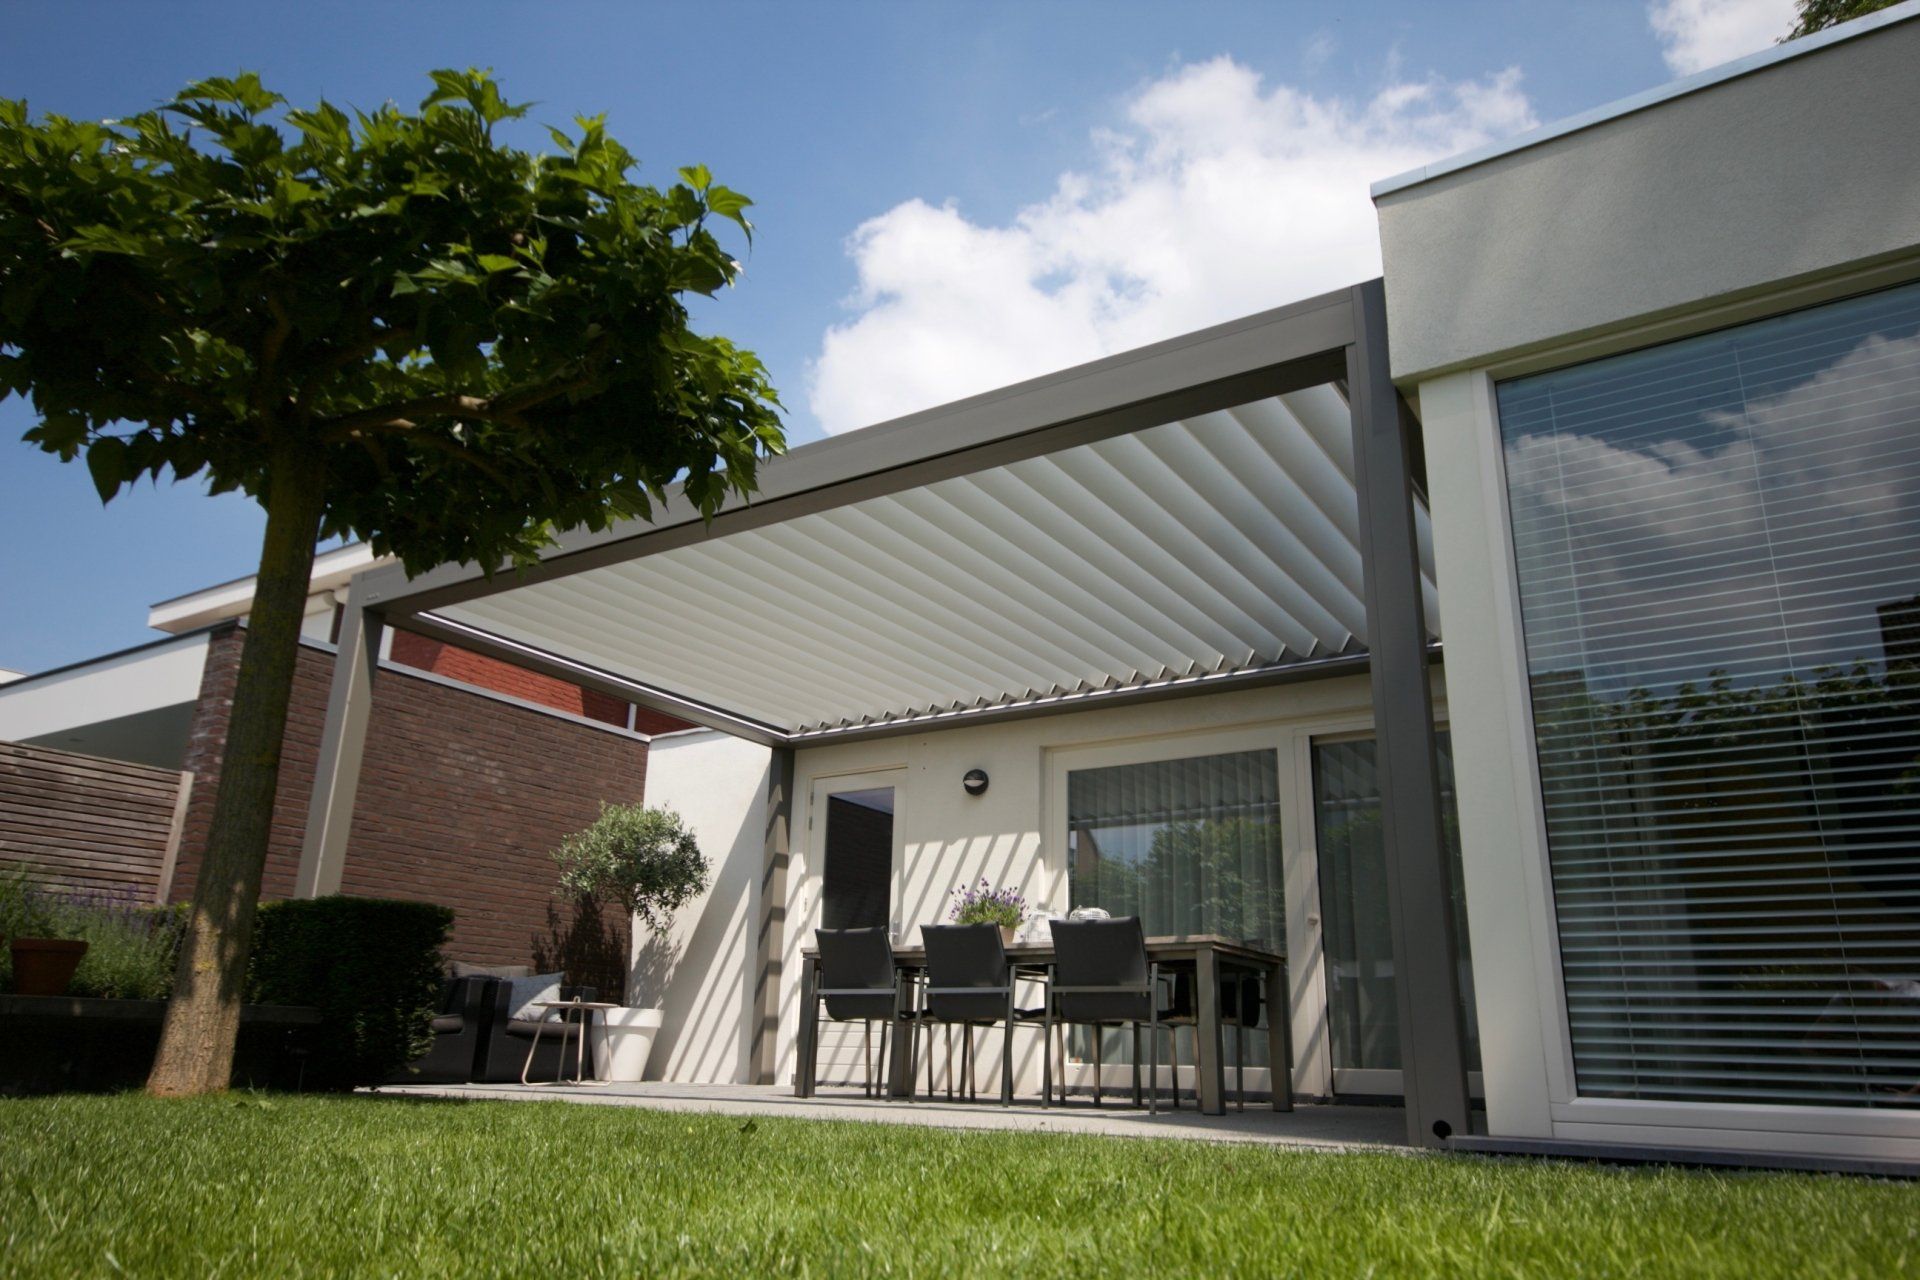 Unsere Meistverkaufte Terrassenüberdachung mit Lamellendach B200 XL aus Aluminium in Berlin. Perfekt geeignet für Ihre Terrasse, Ihren Garten oder die Gastronomie.